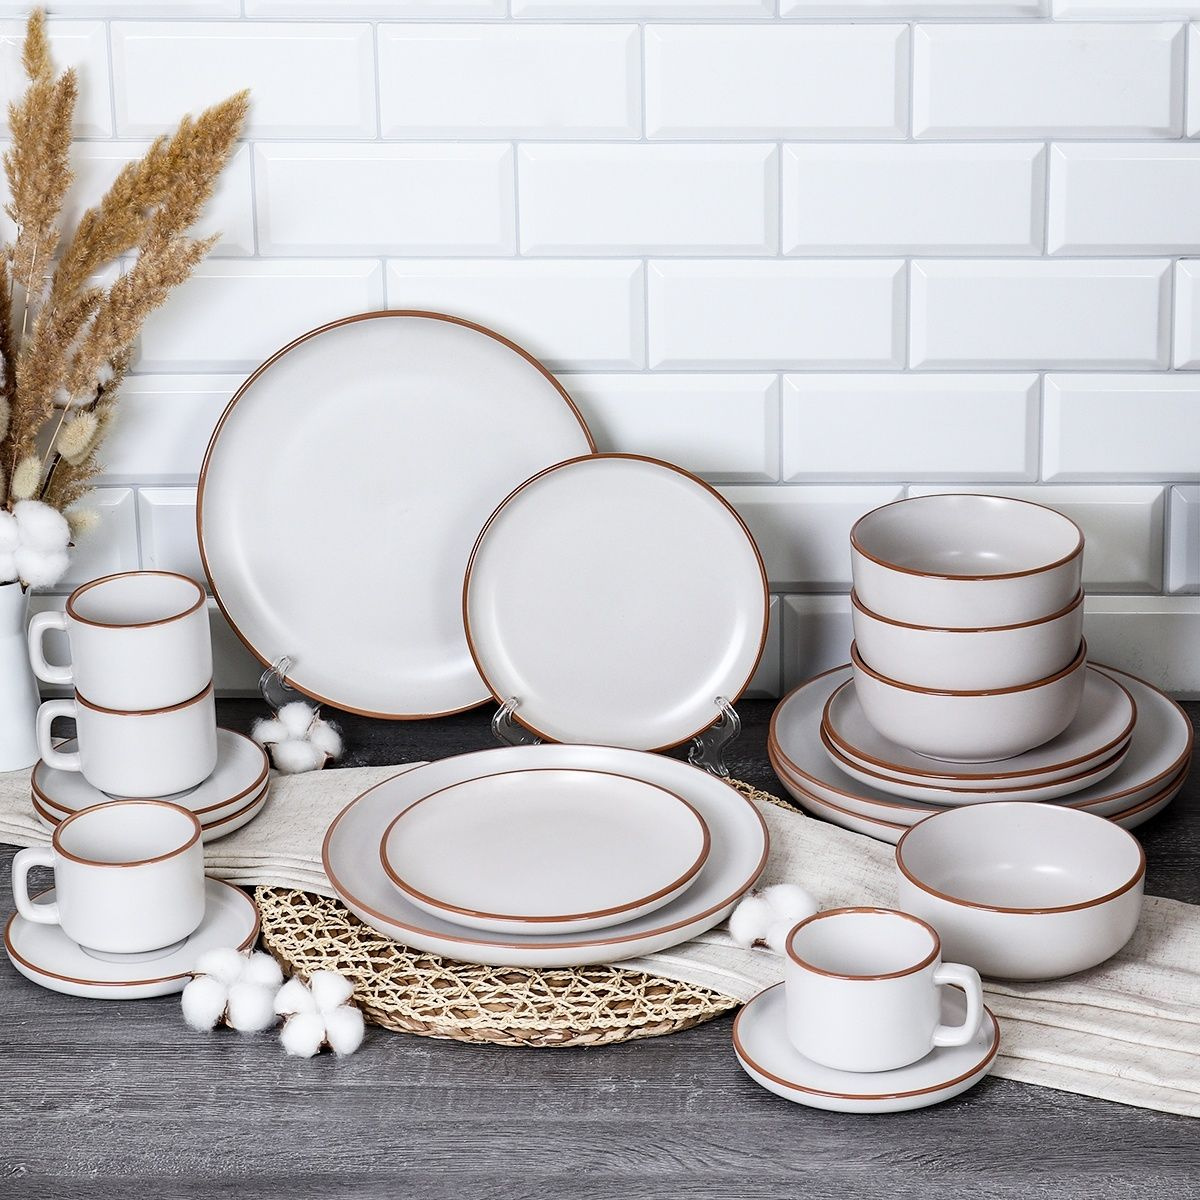 Набор посуды; столовый набор; набор посуды керамика; набор керамической посуды; посуда стильная; посуда современная; набор посуды 20 предметов; набор посуды на 4 персоны; 